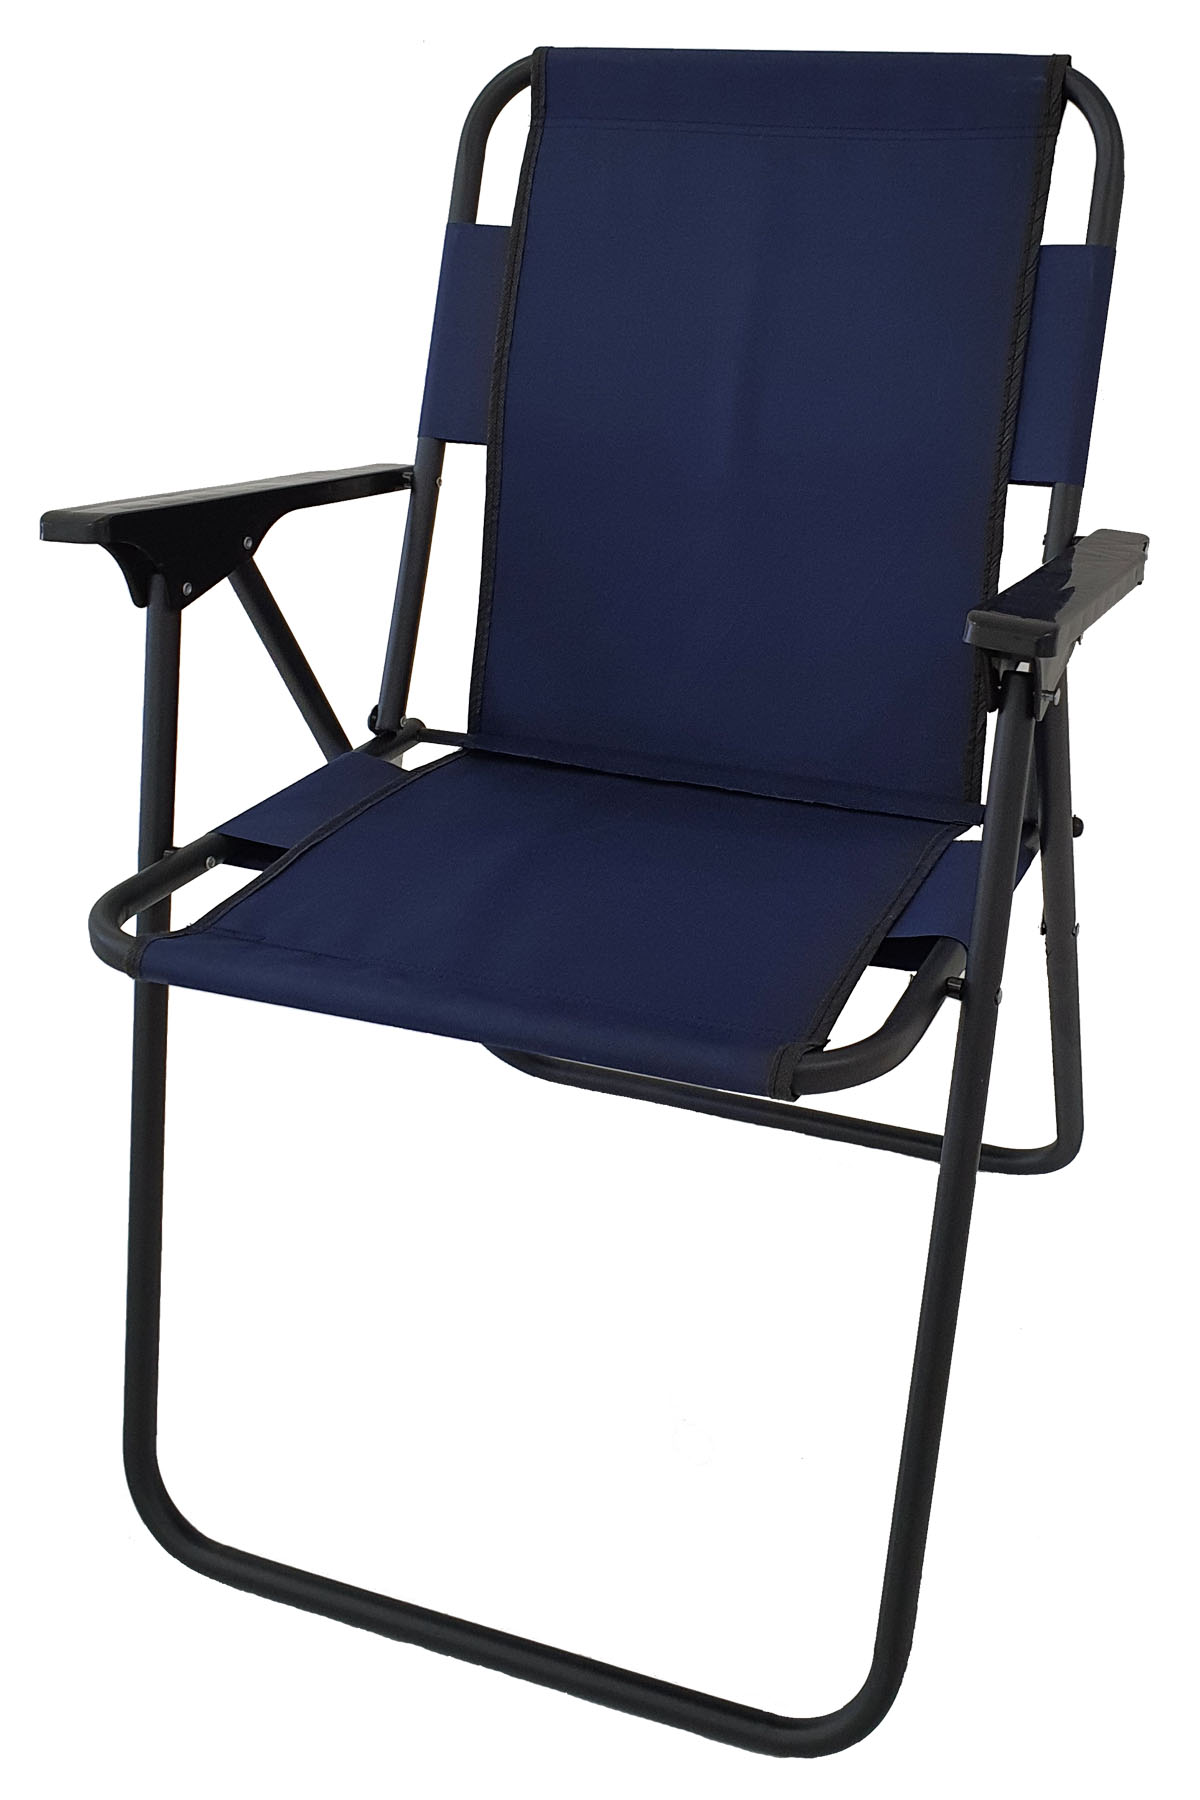 Bofigo Camping Chair Folding Chair Picnic Chair Beach Chair Navy Blue